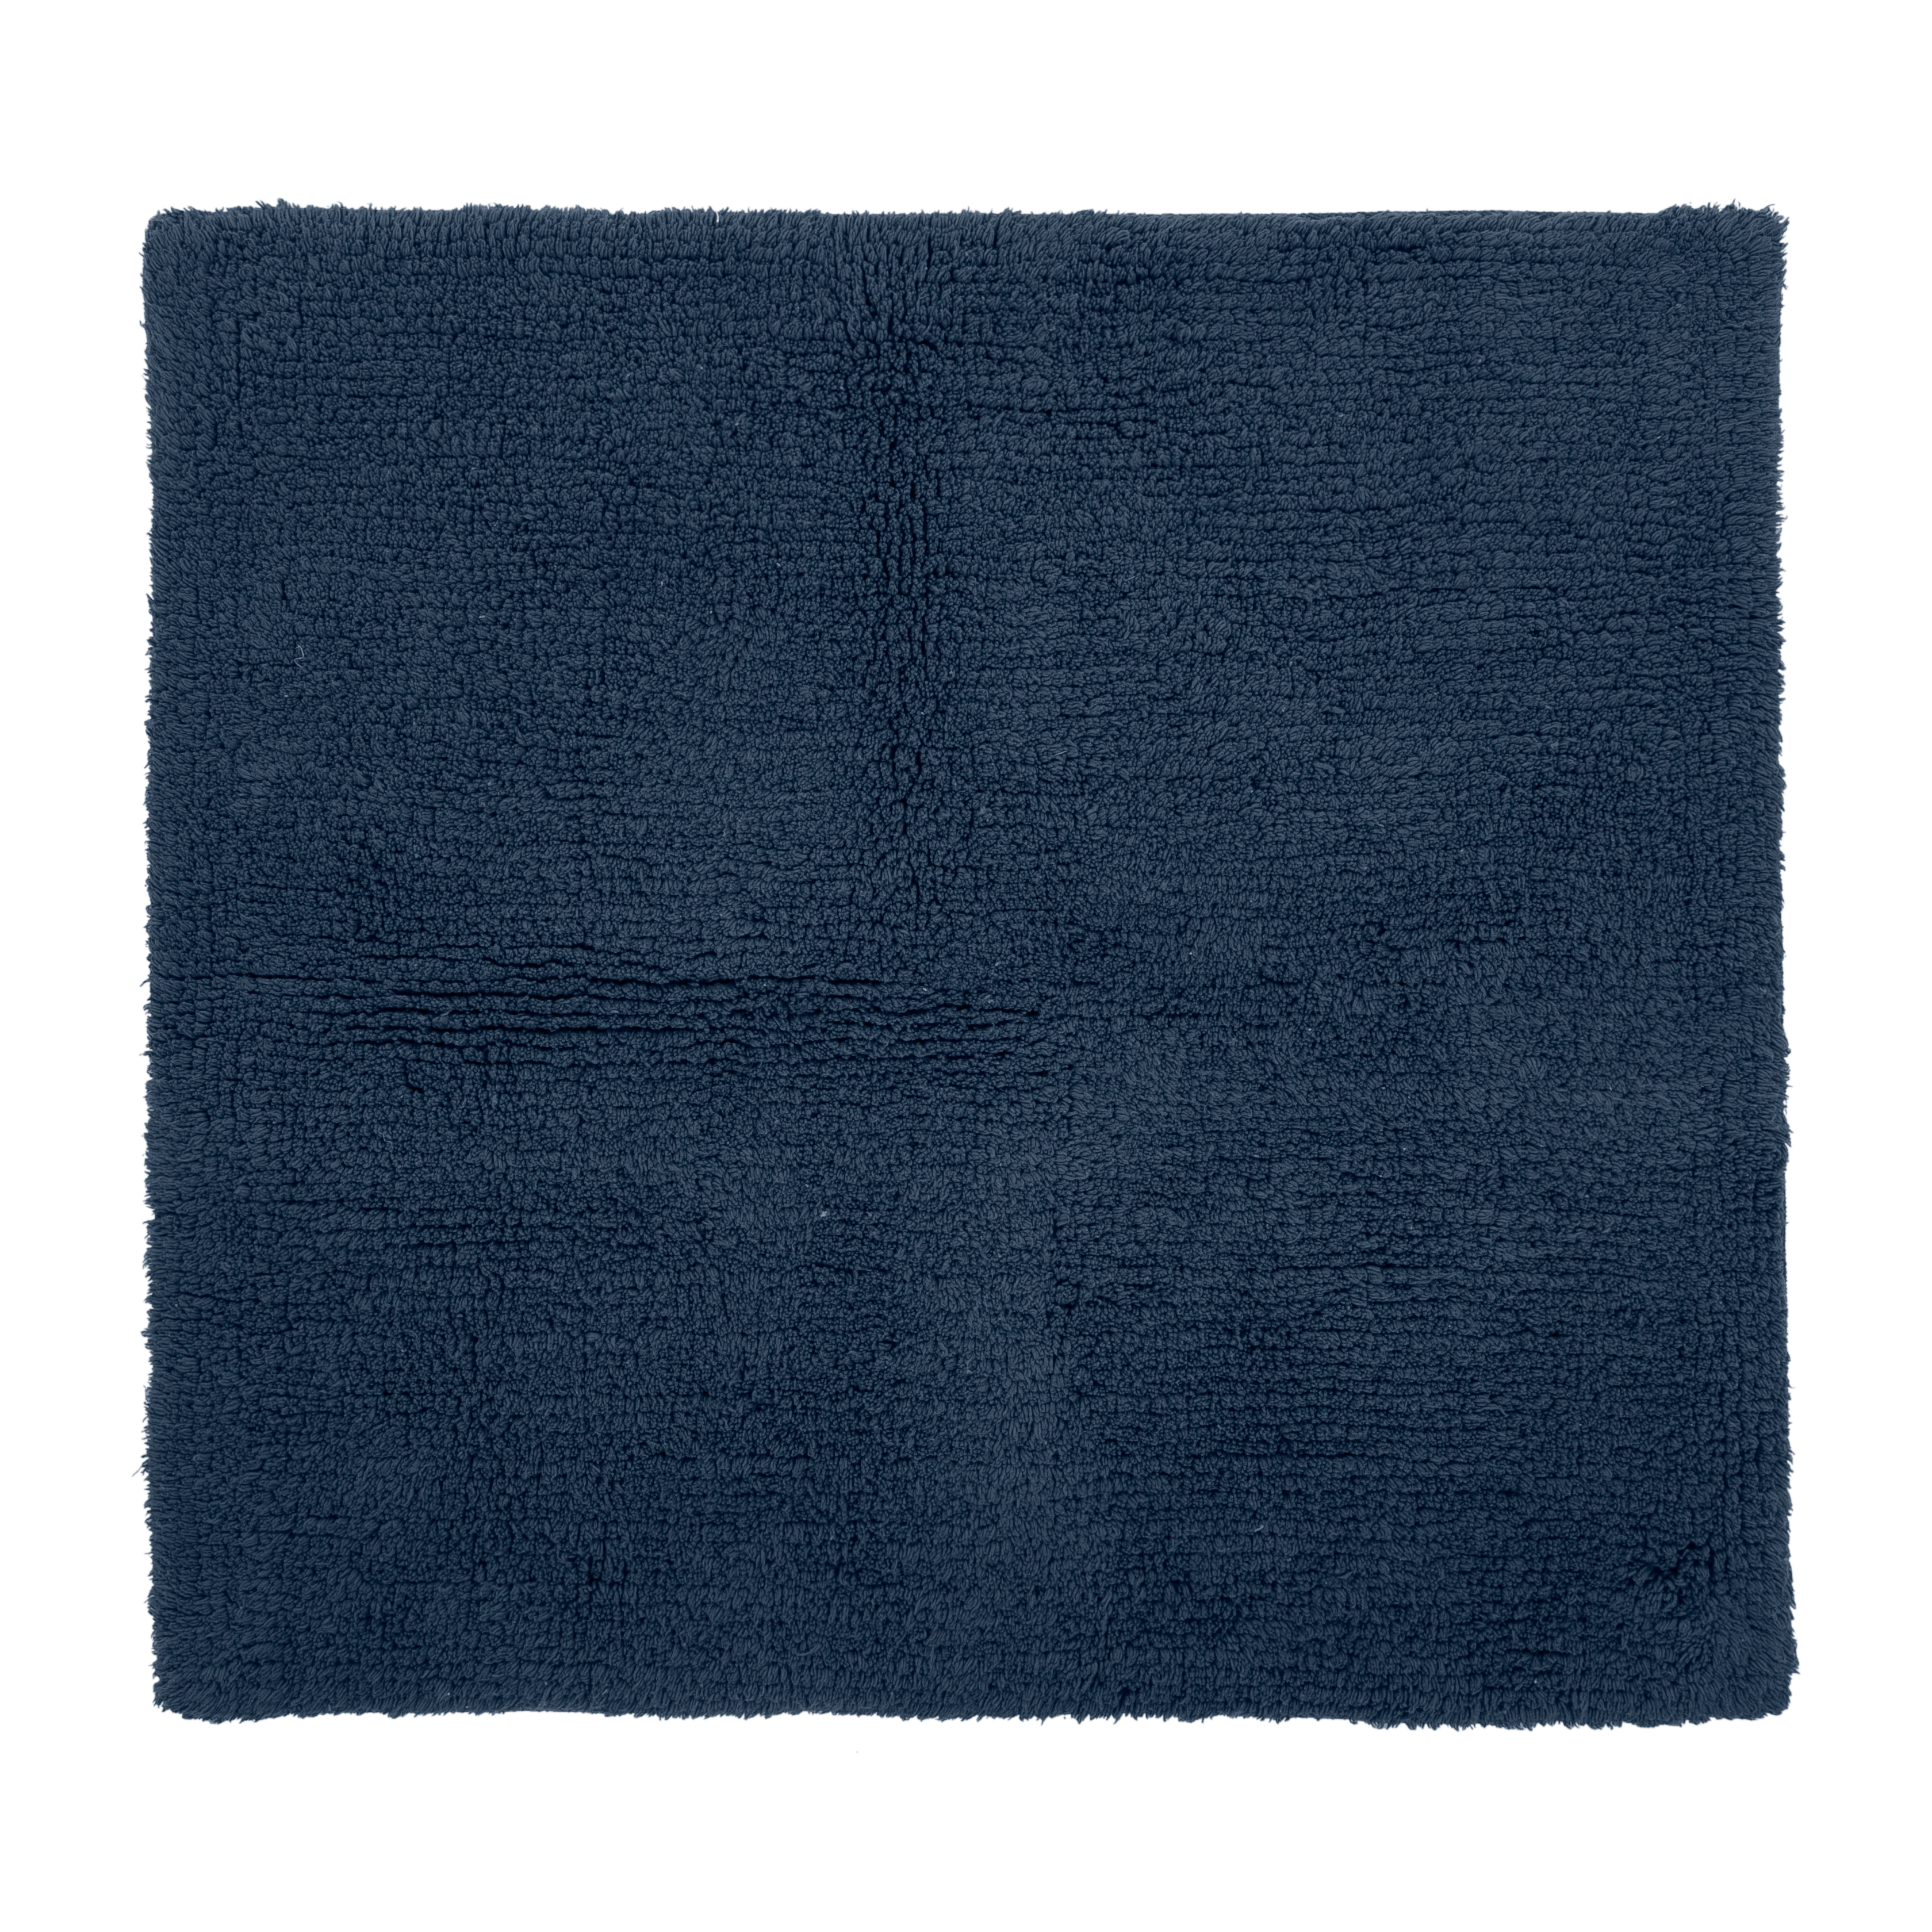 RIVA tapis de bain - coton antidérapant, 60x60cm, blue insigna